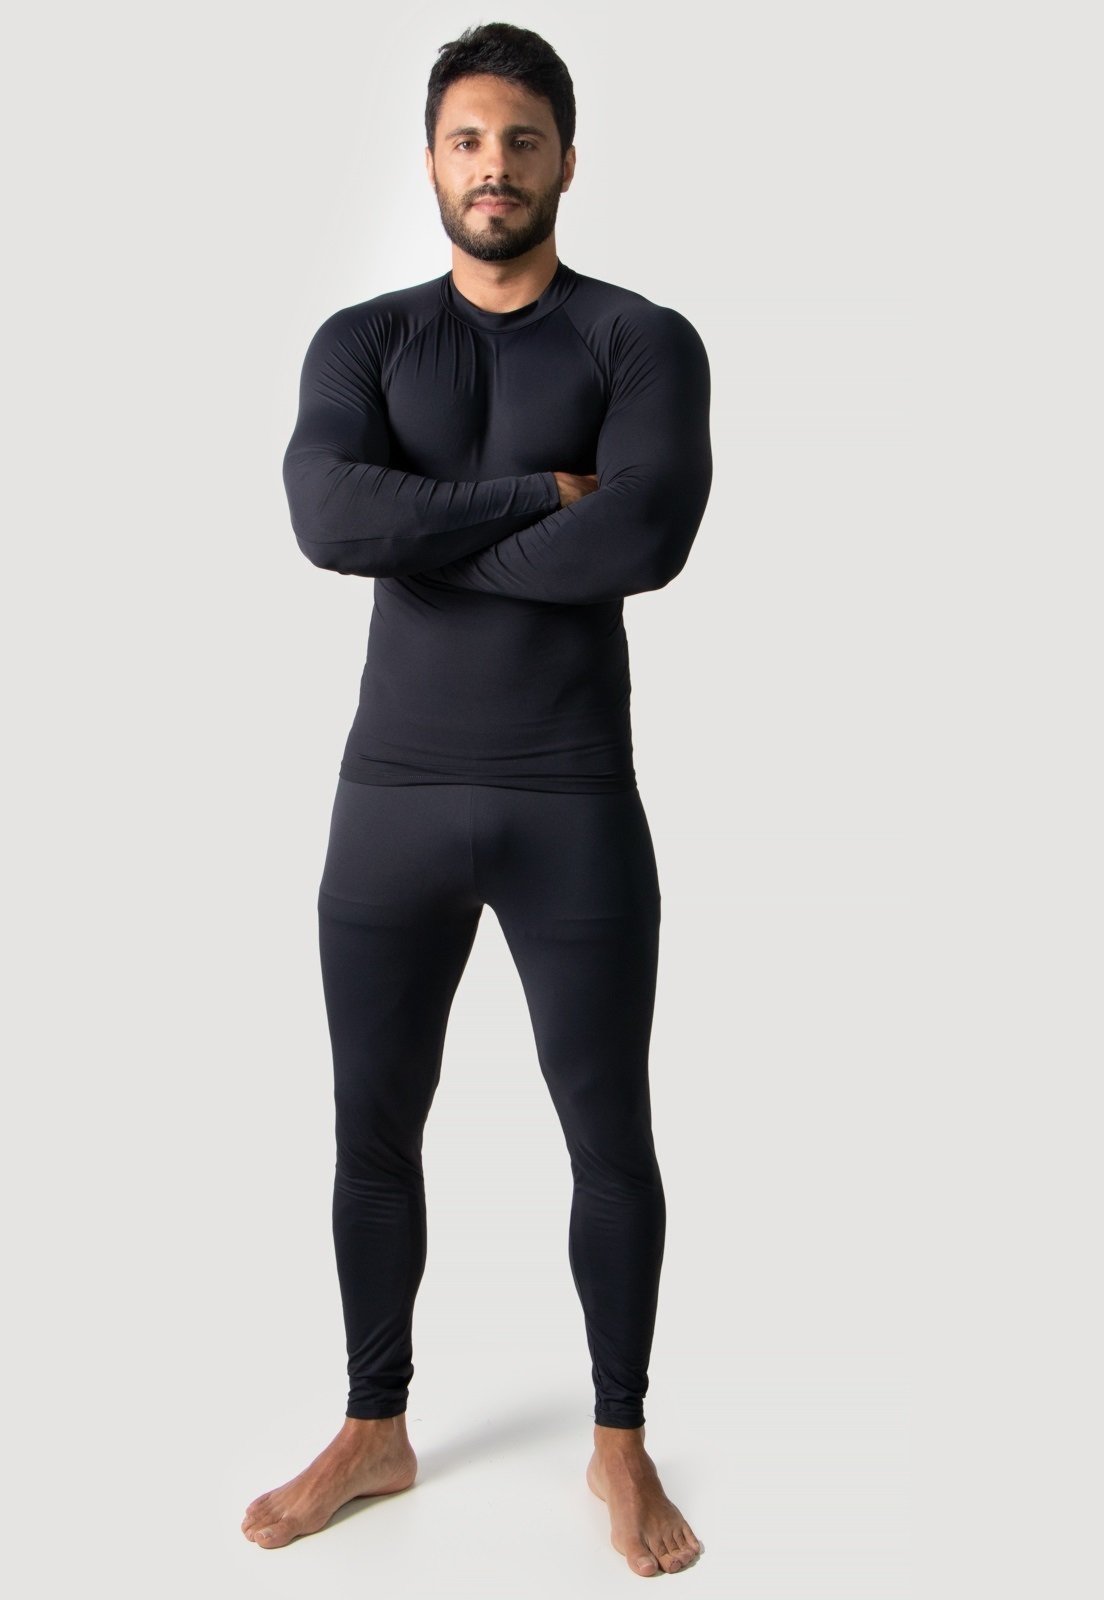 Camisas de compresión de manga larga para hombre, capa base, clima frío,  camisa térmica de manga larga para hombre, protector contra erupciones